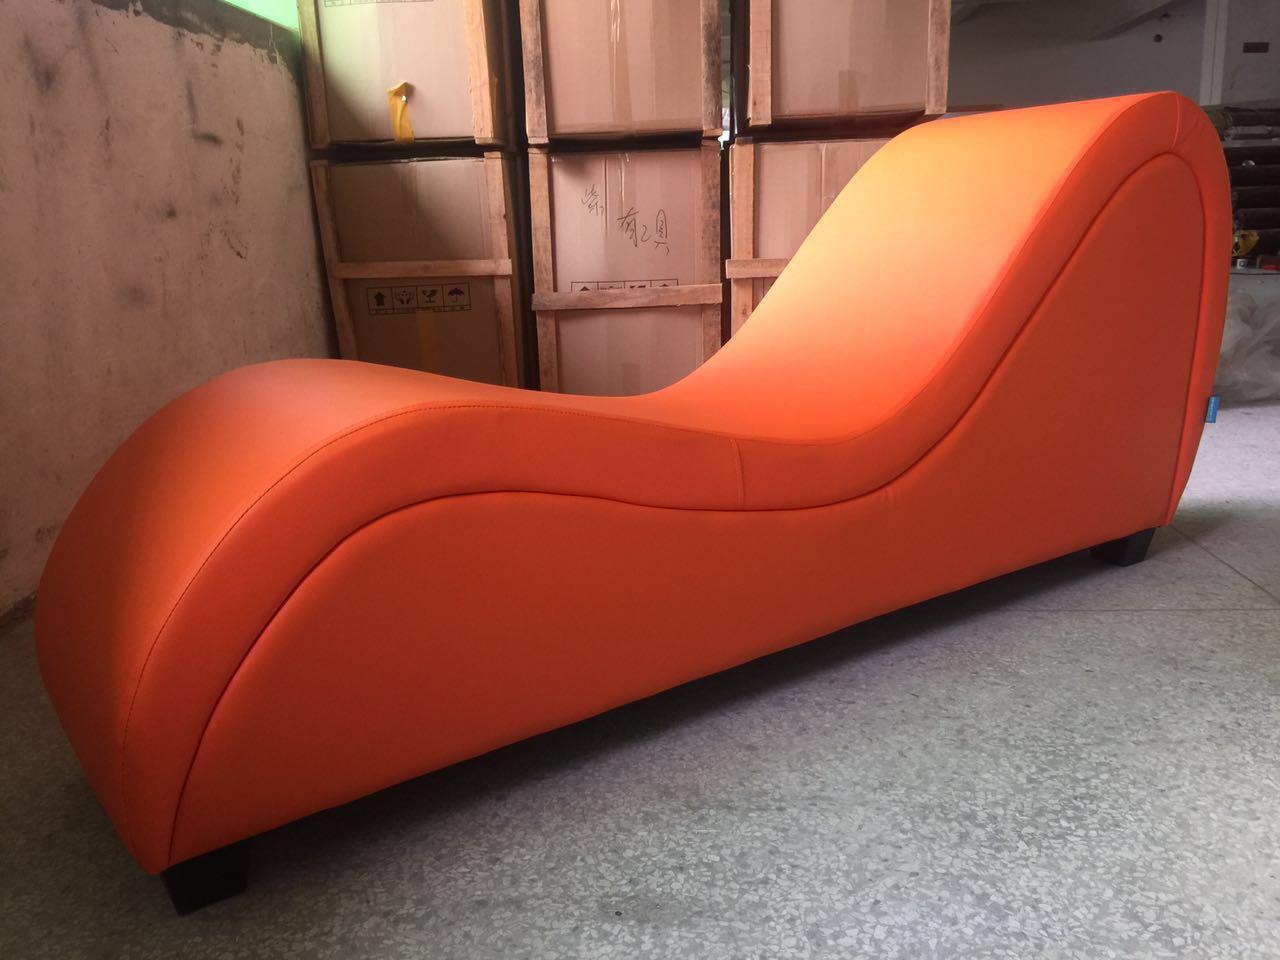 会所情趣沙发夫妻椅S型情趣沙发S凳酒店情趣家具厂家直销一件代发-阿里巴巴